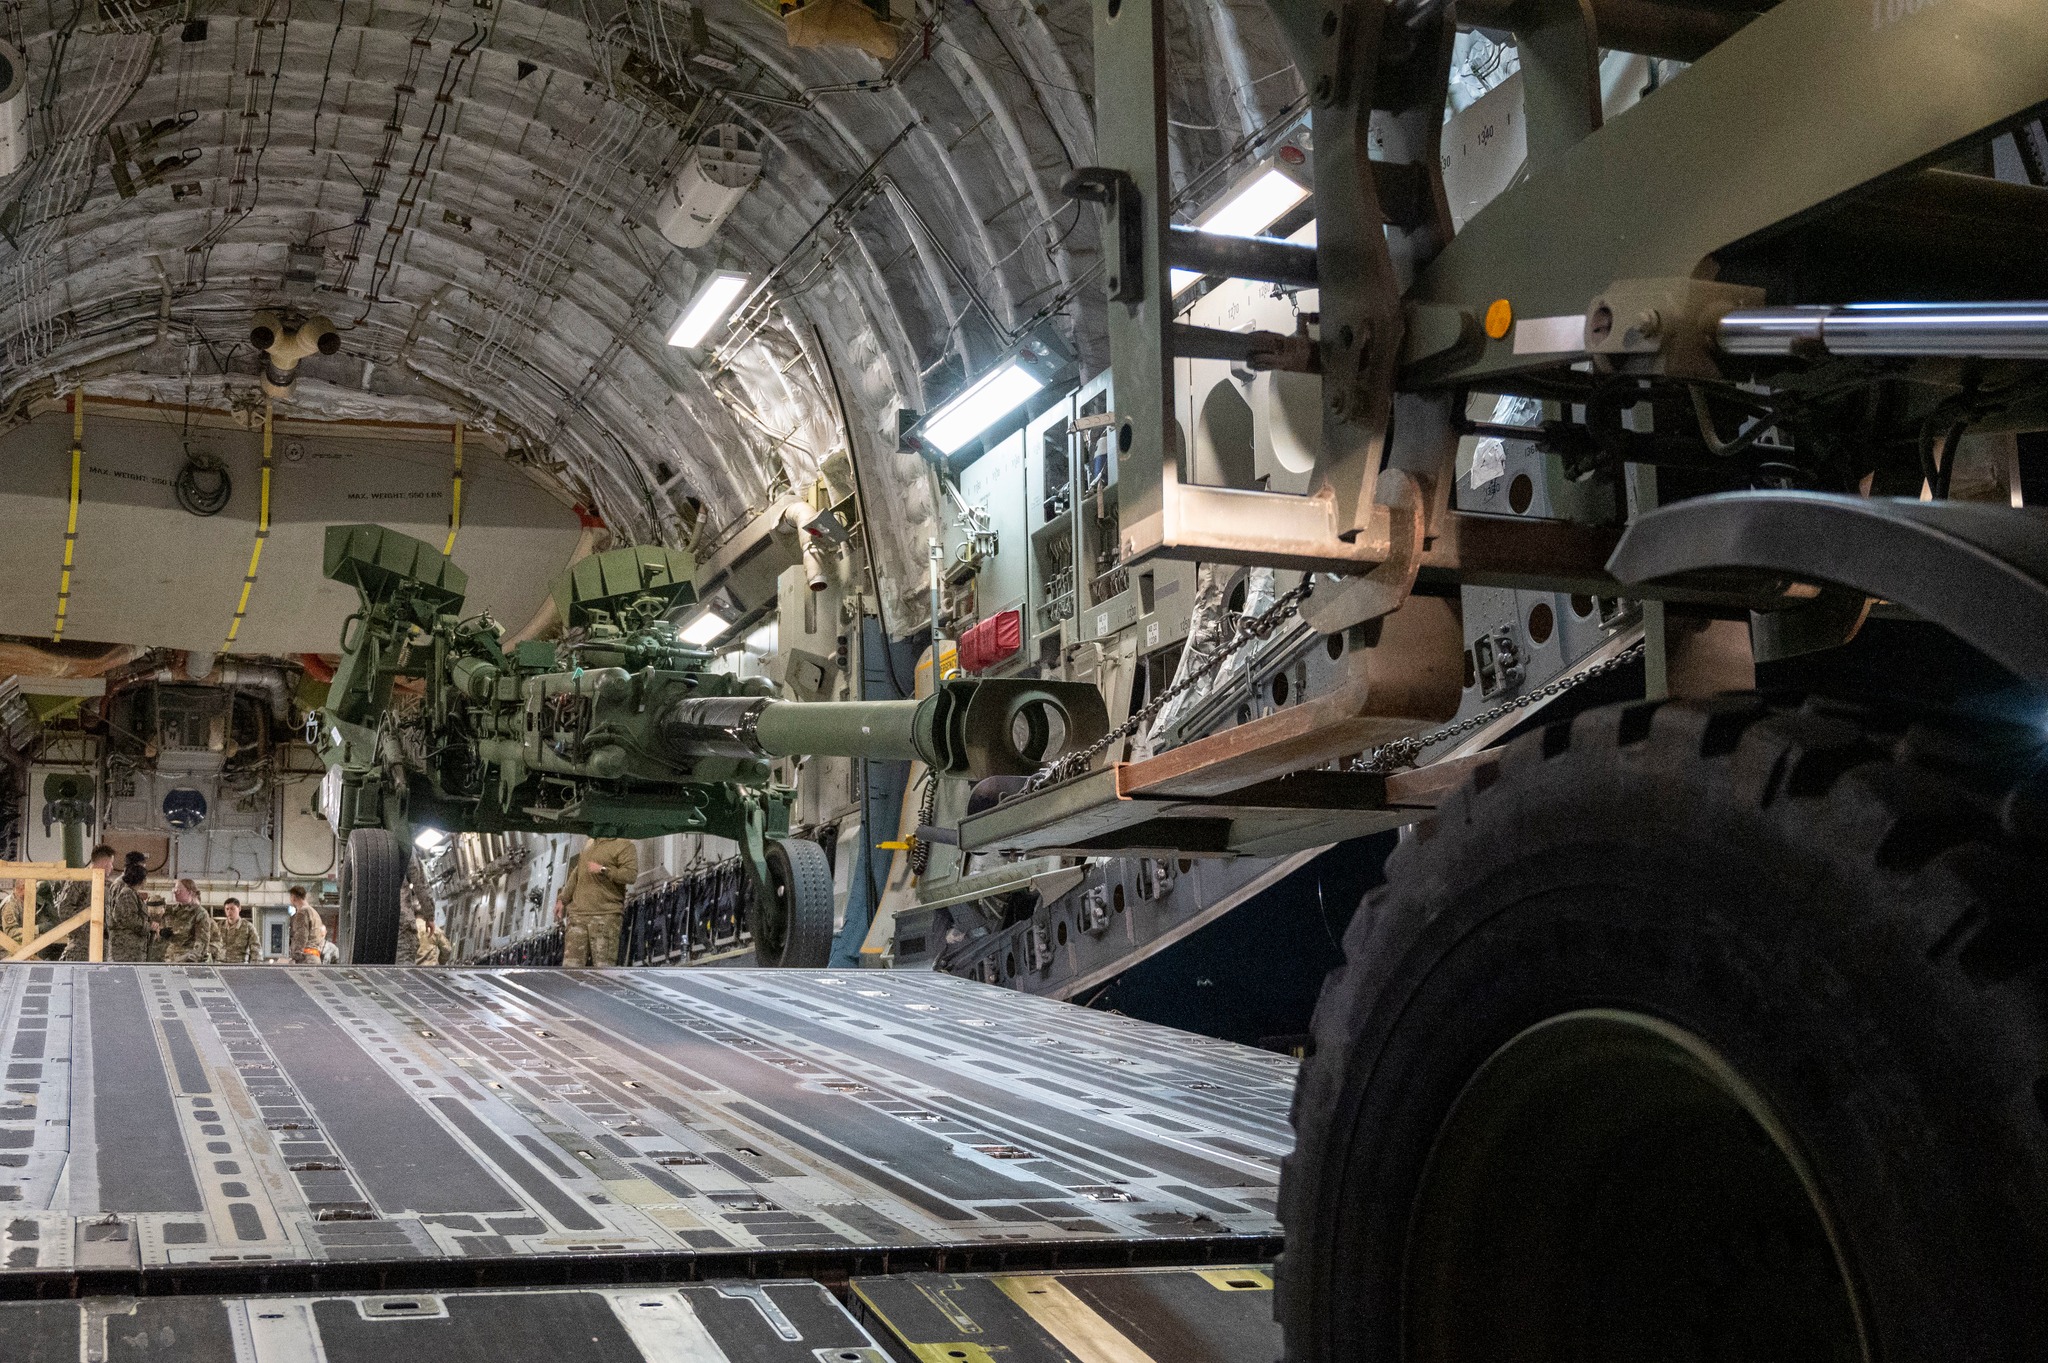 Nowa partia dalekosiężnych haubic M777 z USA gotowa do wysyłki na Ukrainę (zdjęcie)